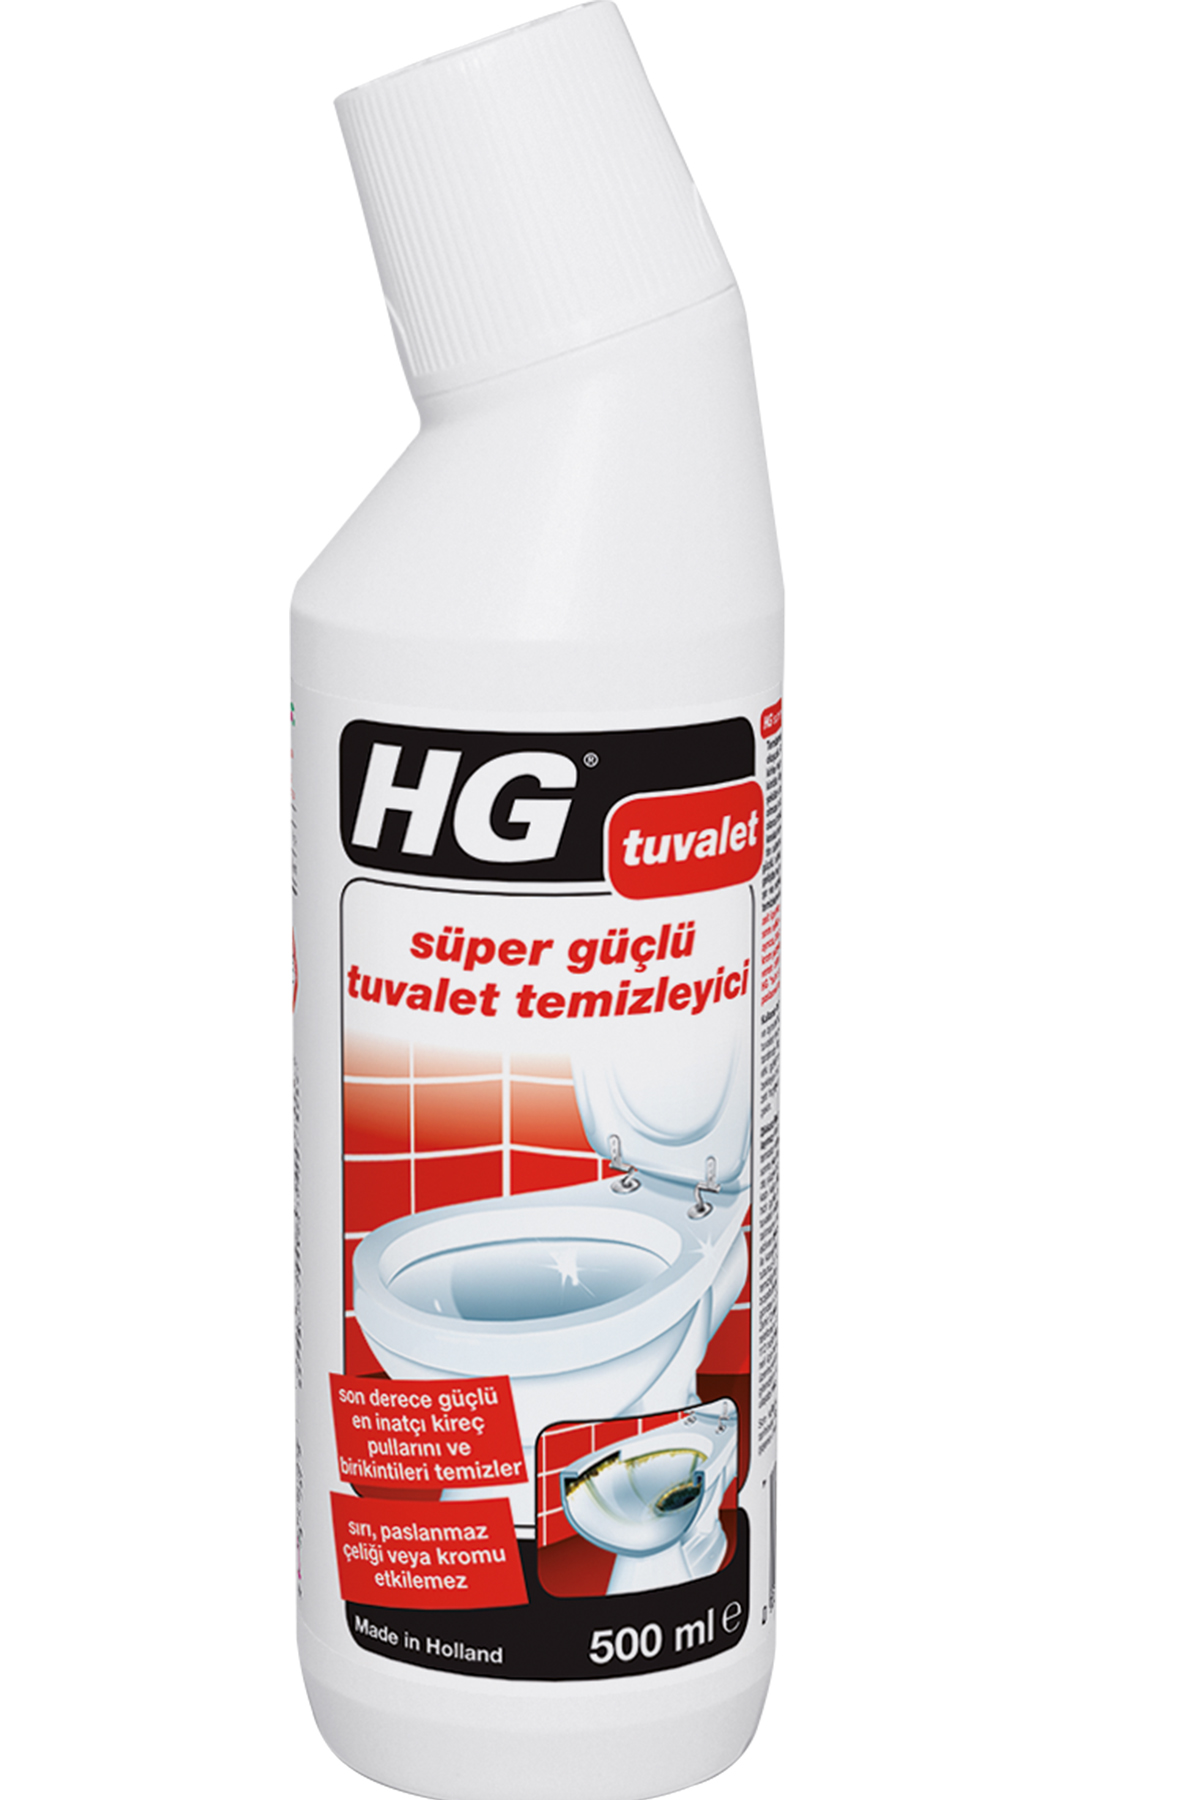 HG Süper Güçlü Tuvalet Temizleyicisi 0.5 L | Hg Türkiye